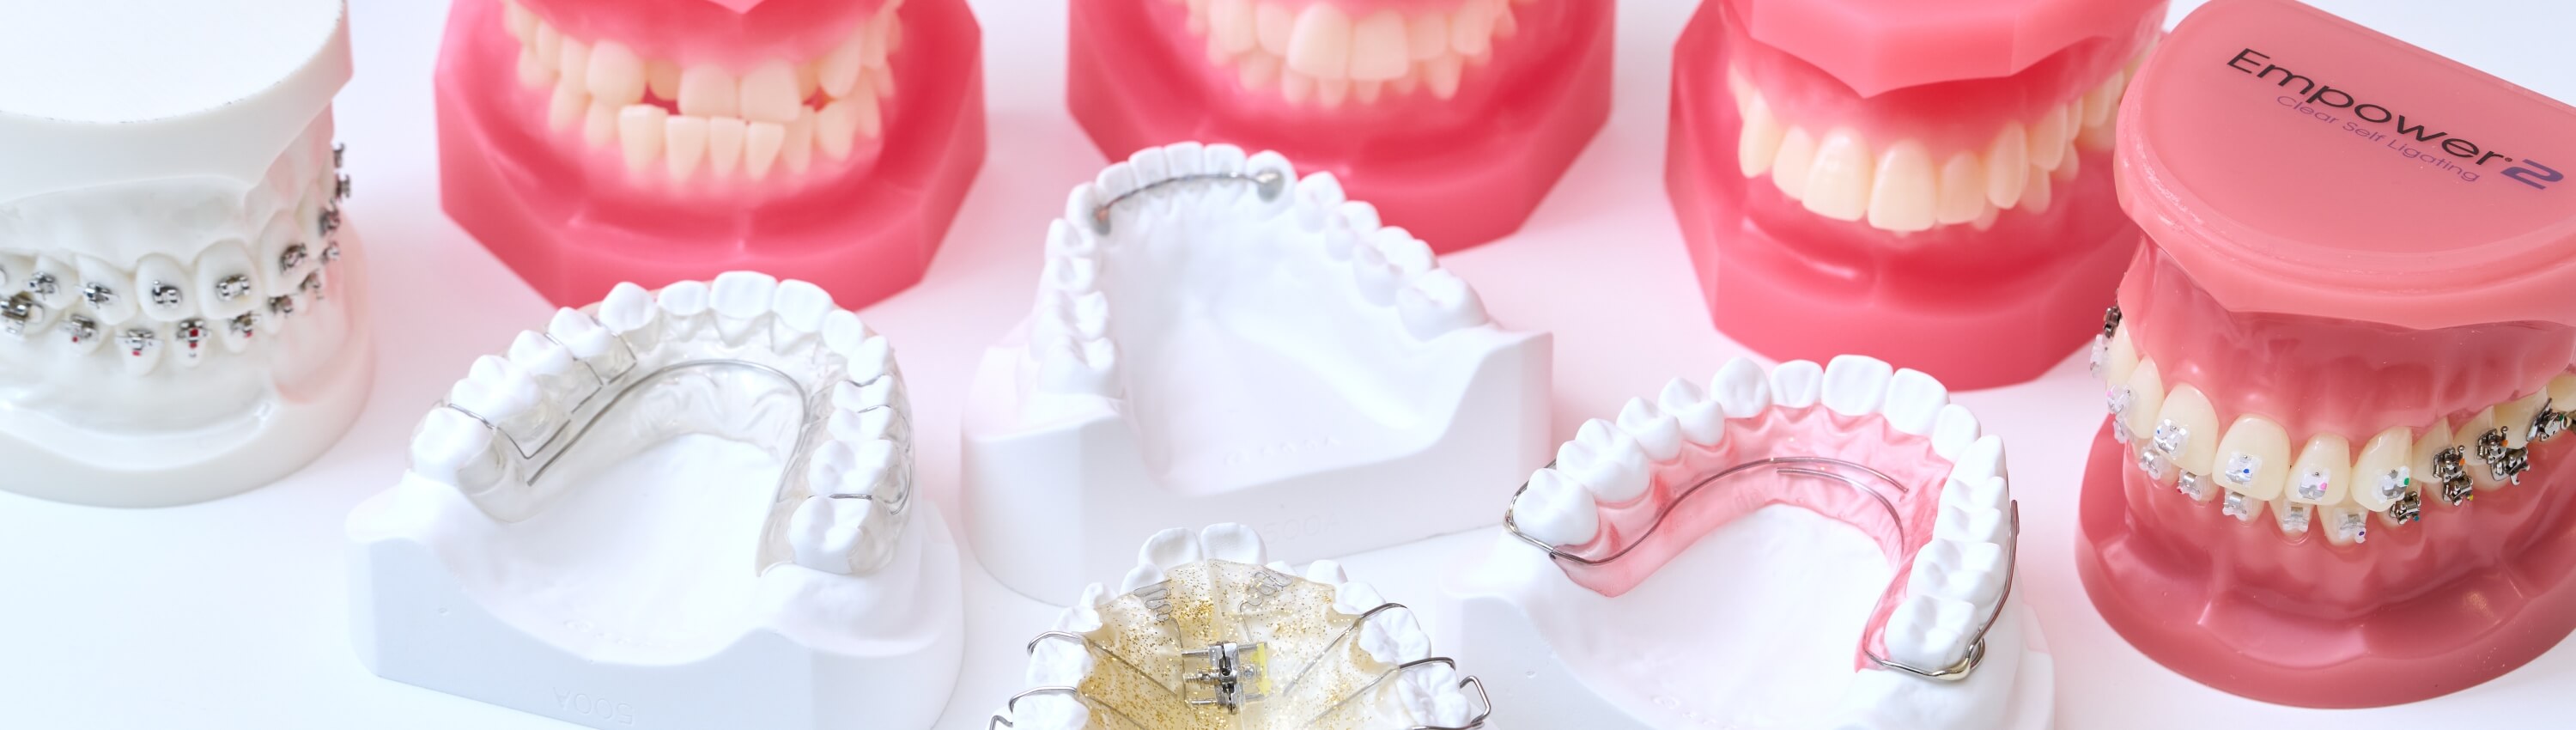 歯列矯正について